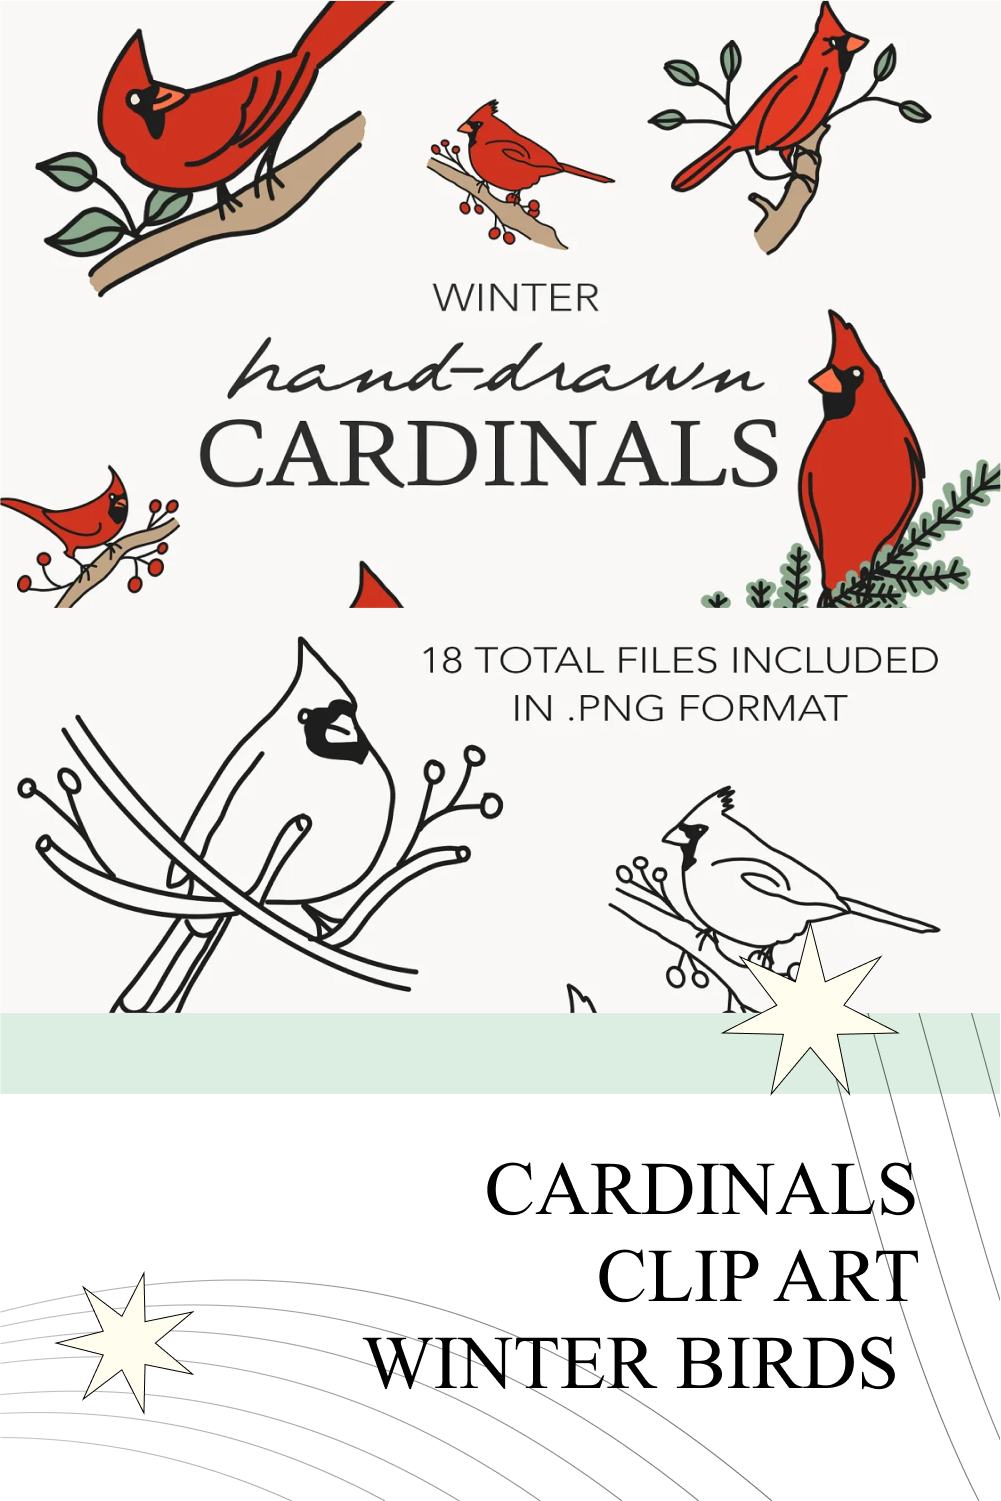 Cardinals clip art winter birds of pinterest.